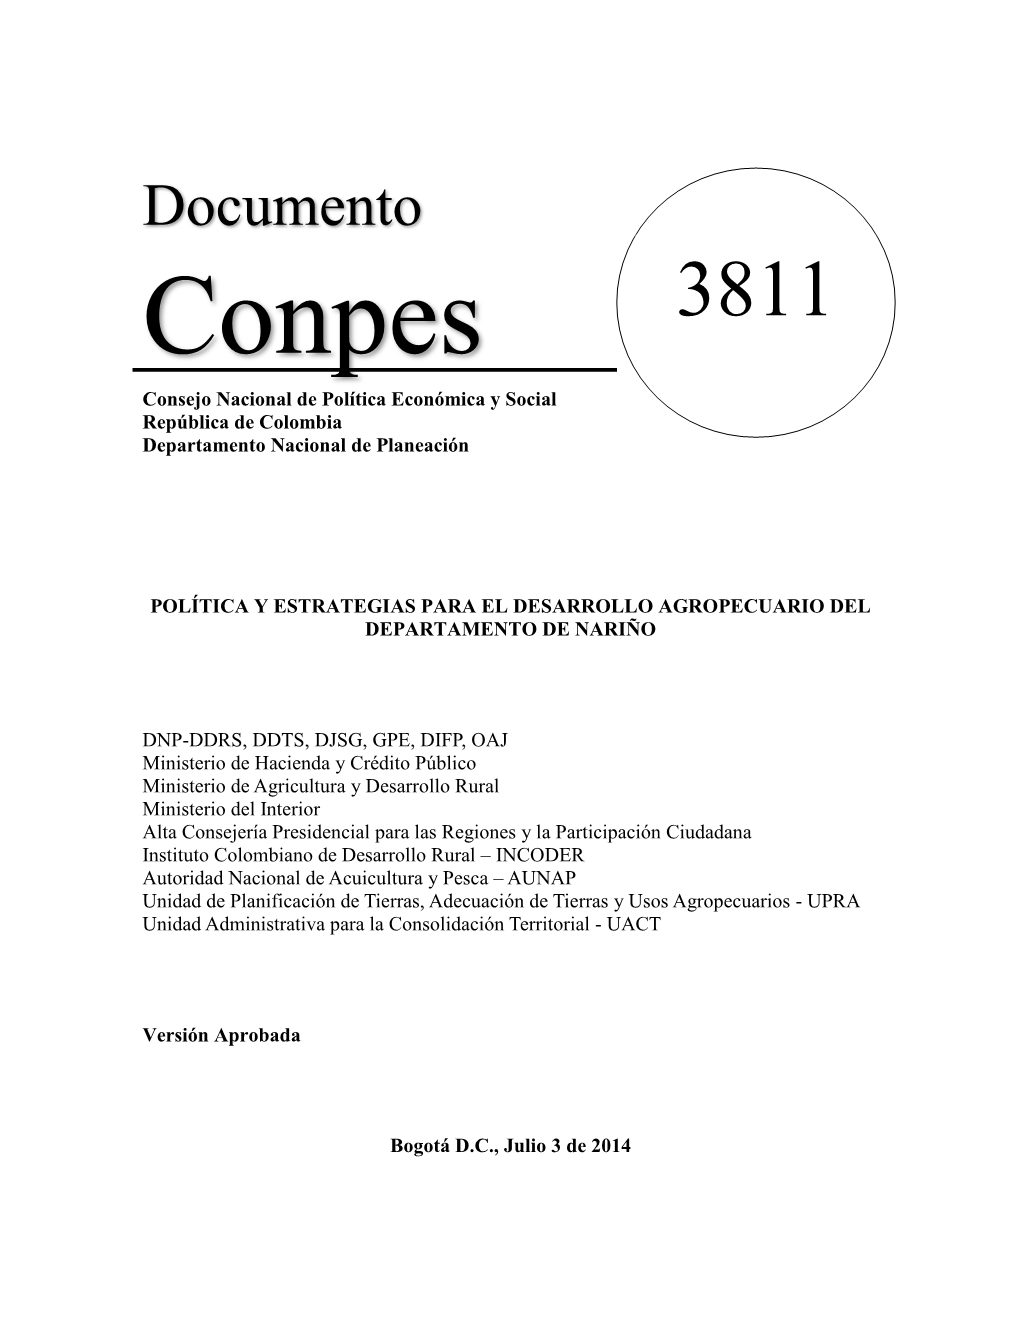 Documento Conpes 3811 Consejo Nacional De Política Económica Y Social República De Colombia Departamento Nacional De Planeación